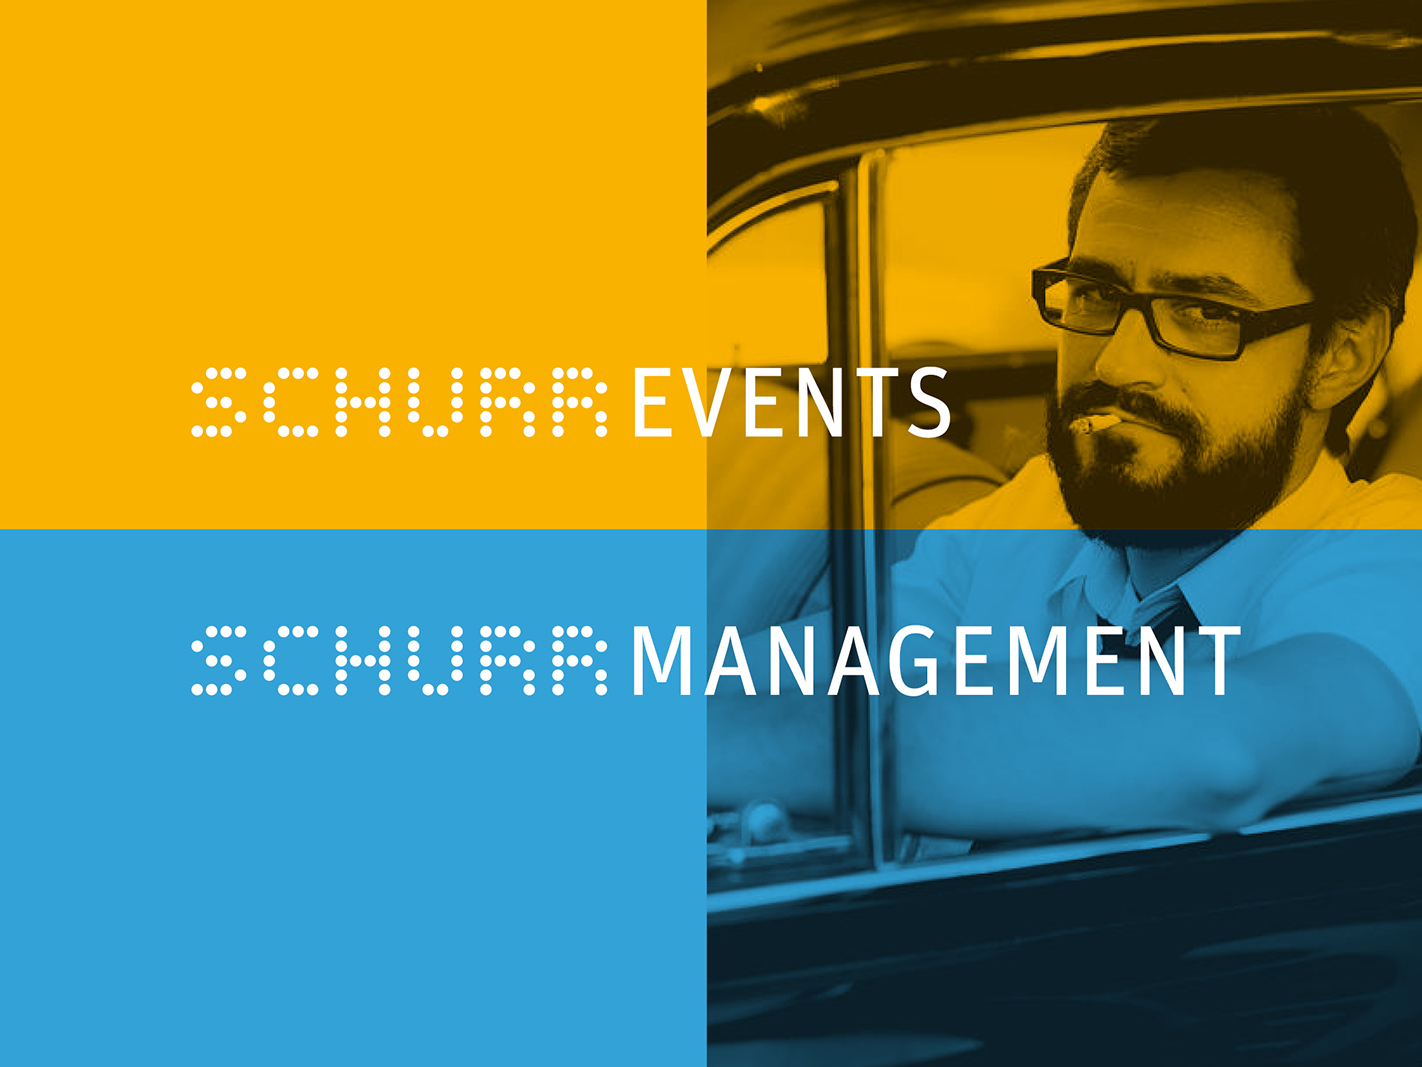 ATK-SCHURR-Event-Management-Corporate-Design-2.jpg